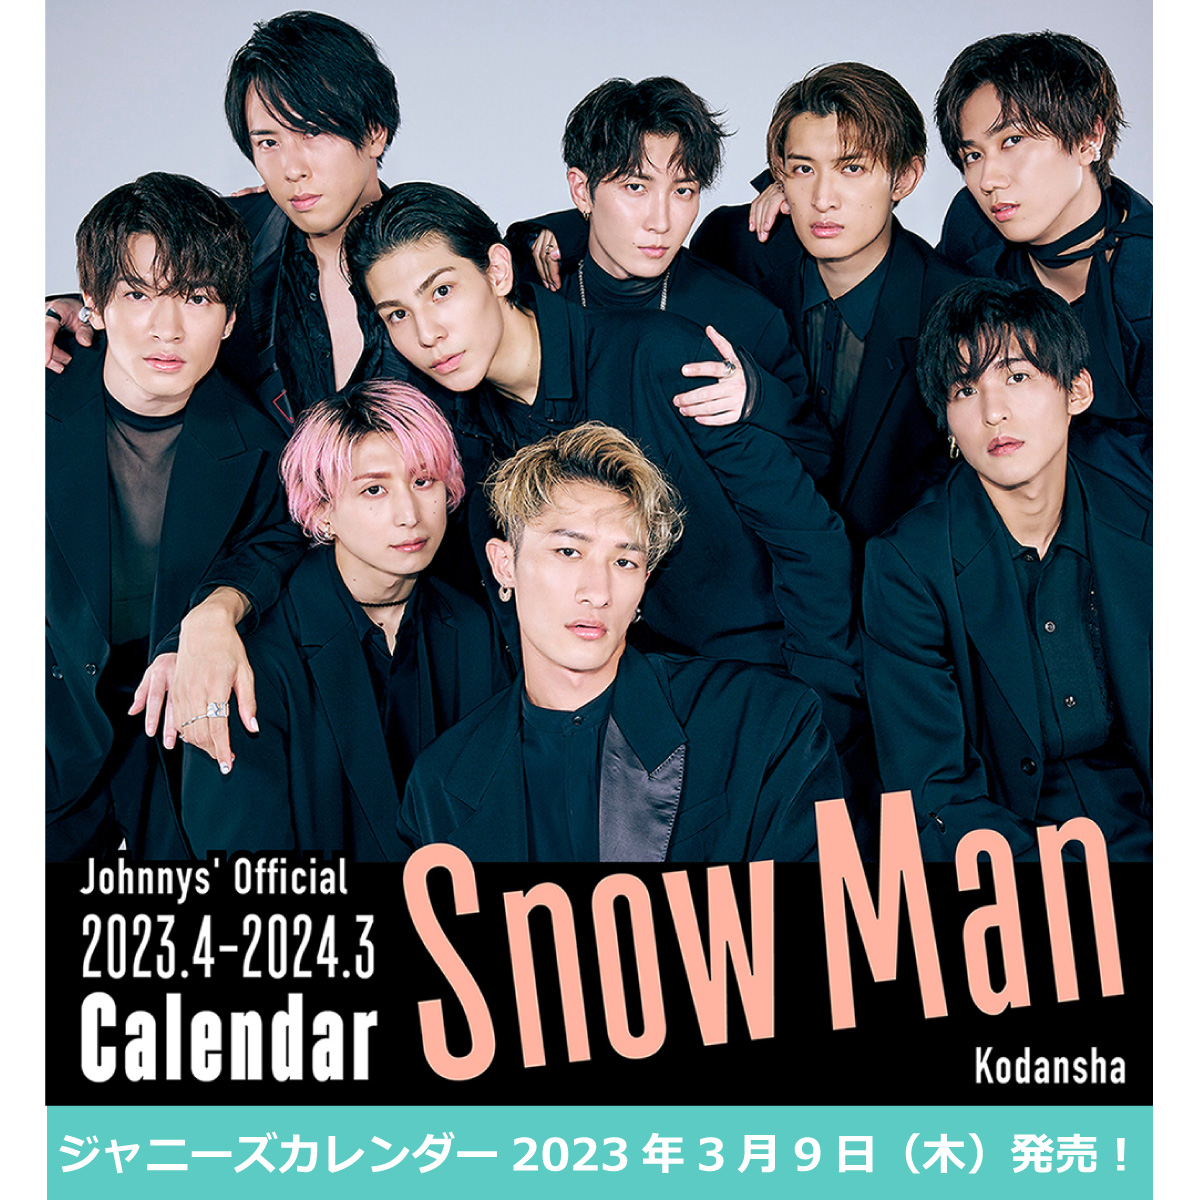 【楽天市場】Snow Man ジャニーズ公式カレンダー 2023年度版